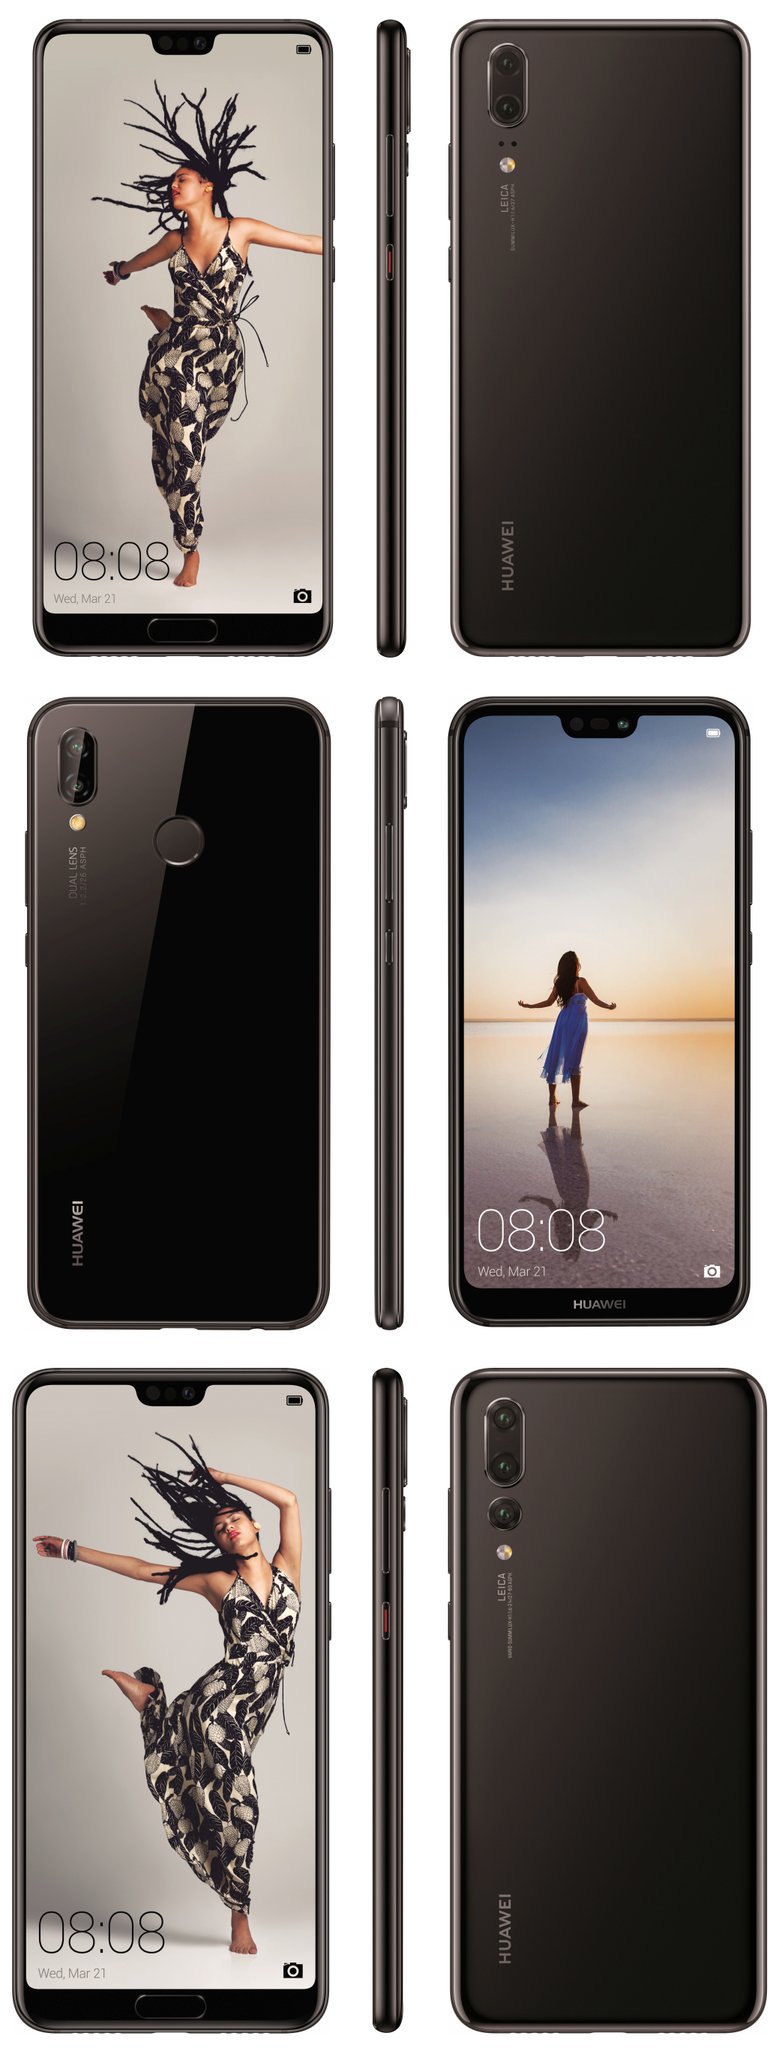 Эван Блэсс опубликовал официальные изображения смартфонов Huawei P20, P20 Pro и P20 Lite, позволяющие разглядеть отличия между ними